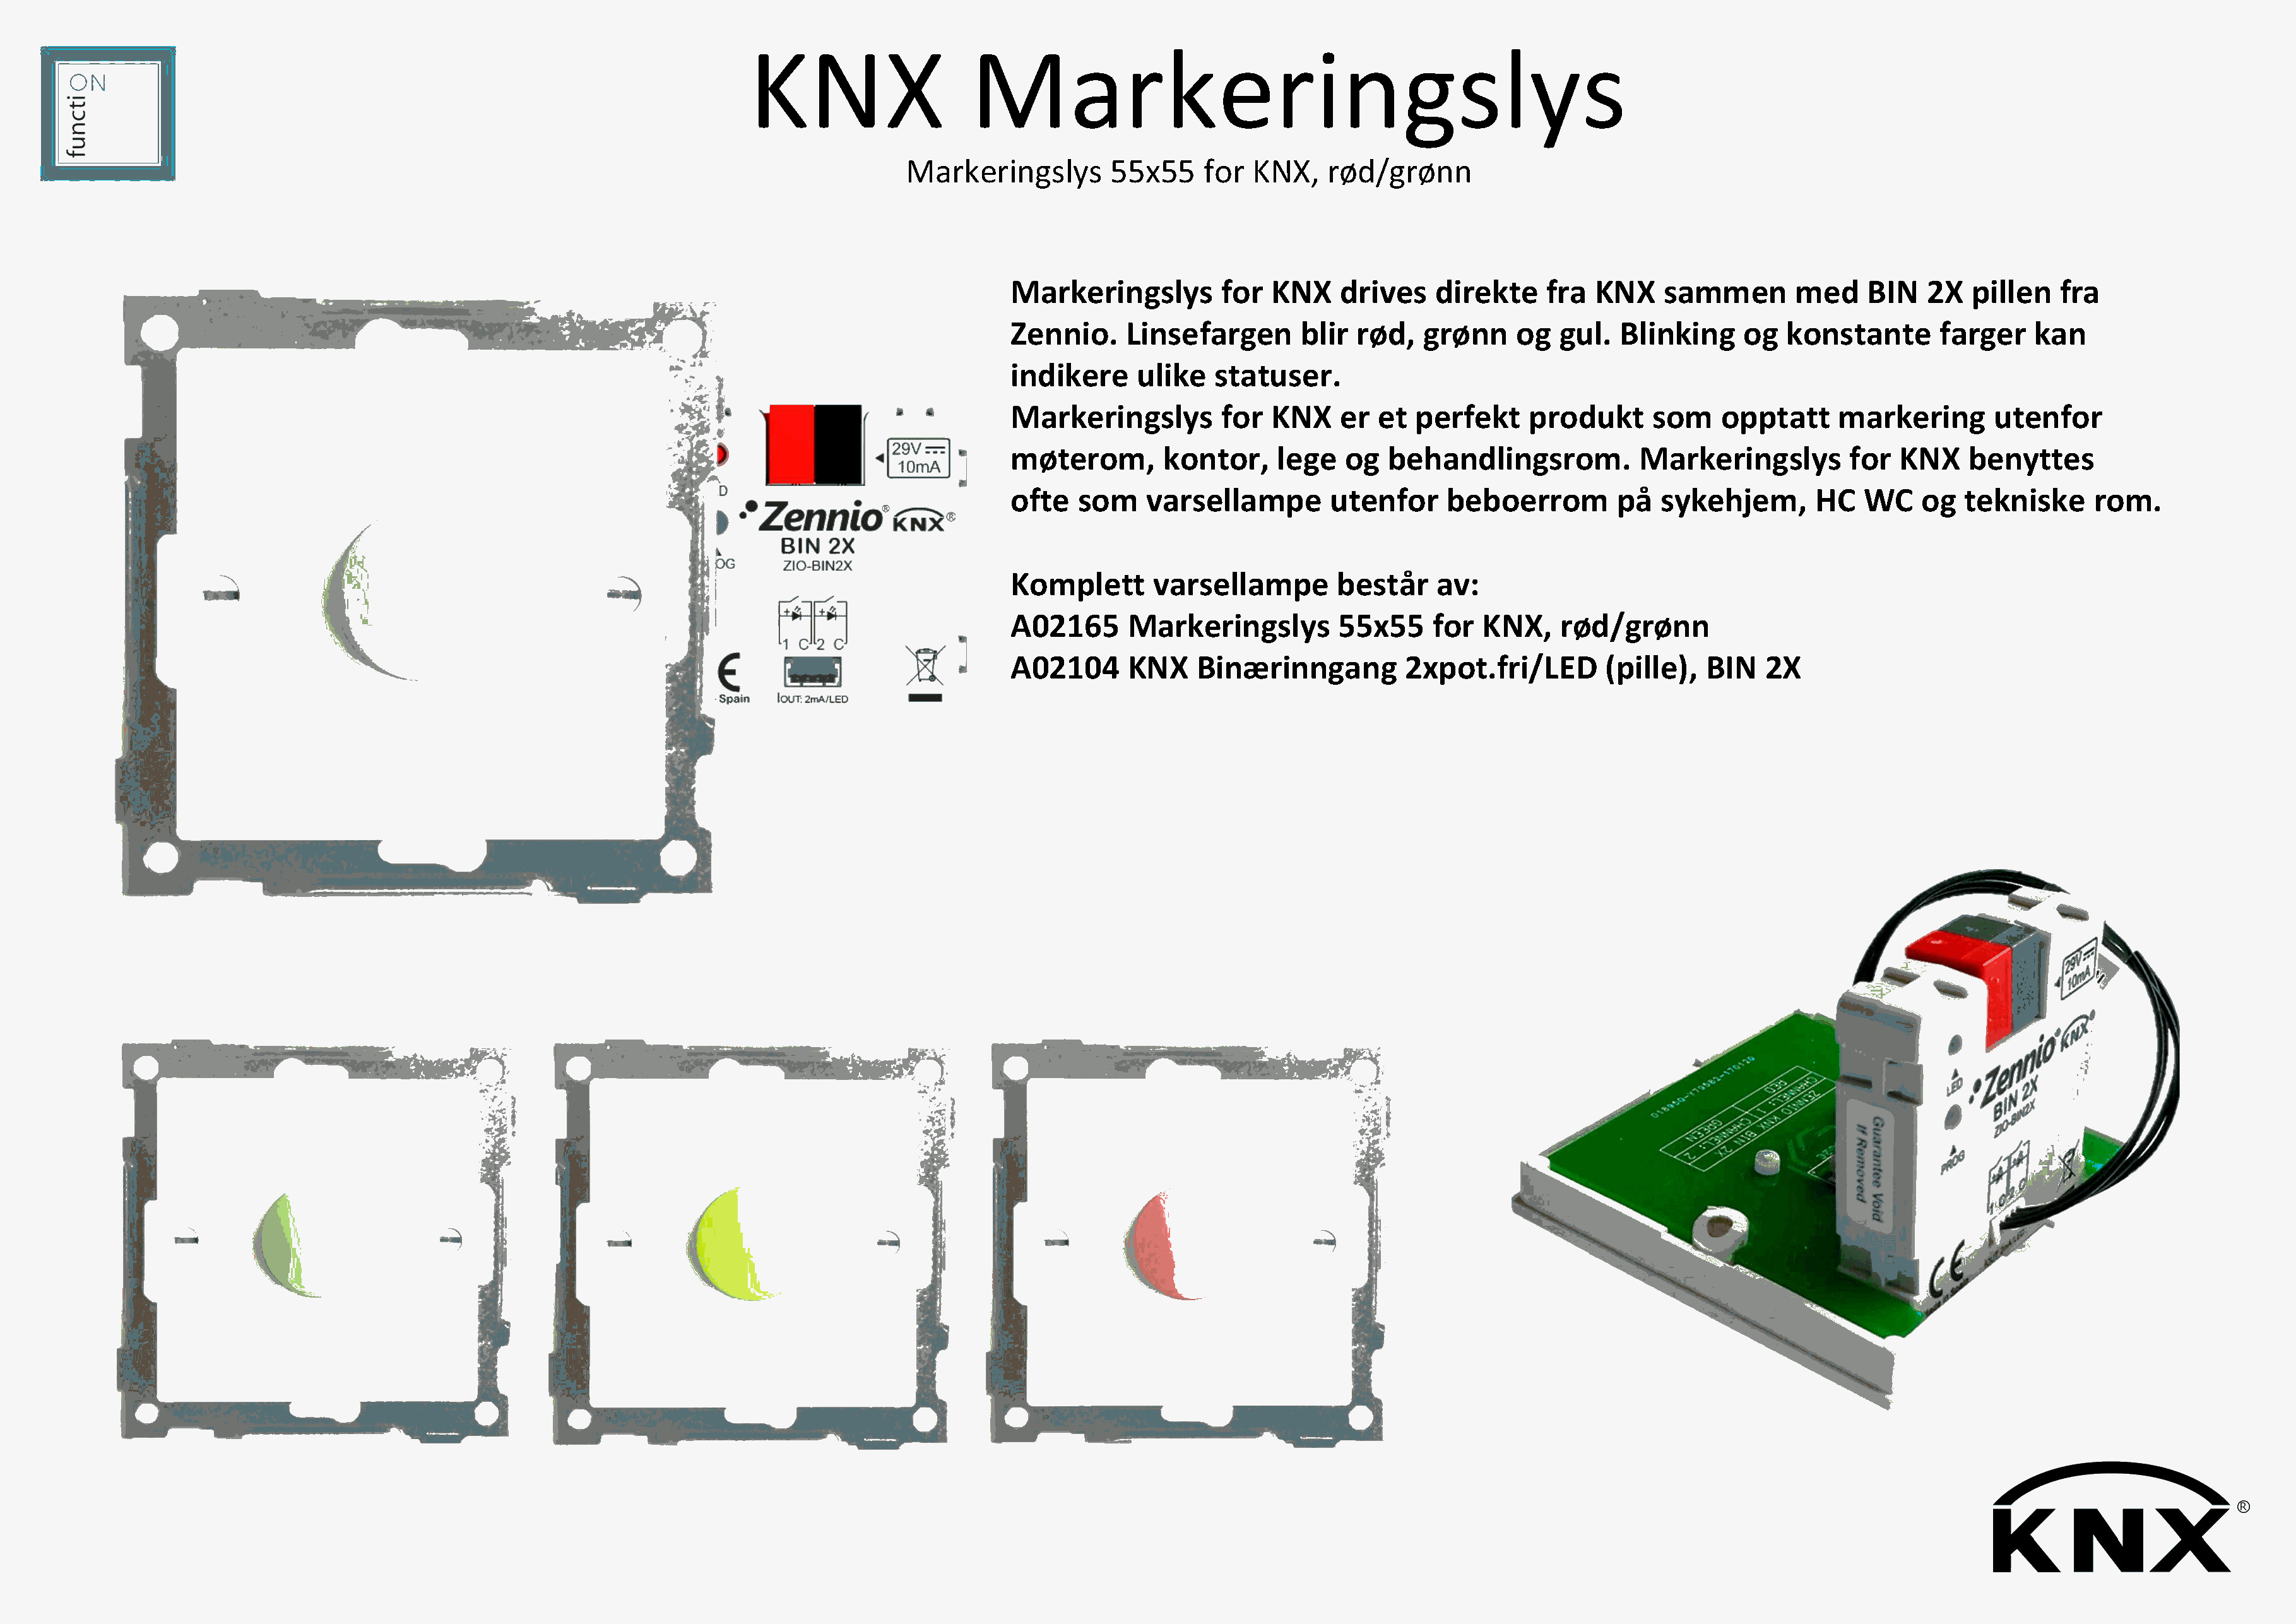 KNX Markeringslys_1.png